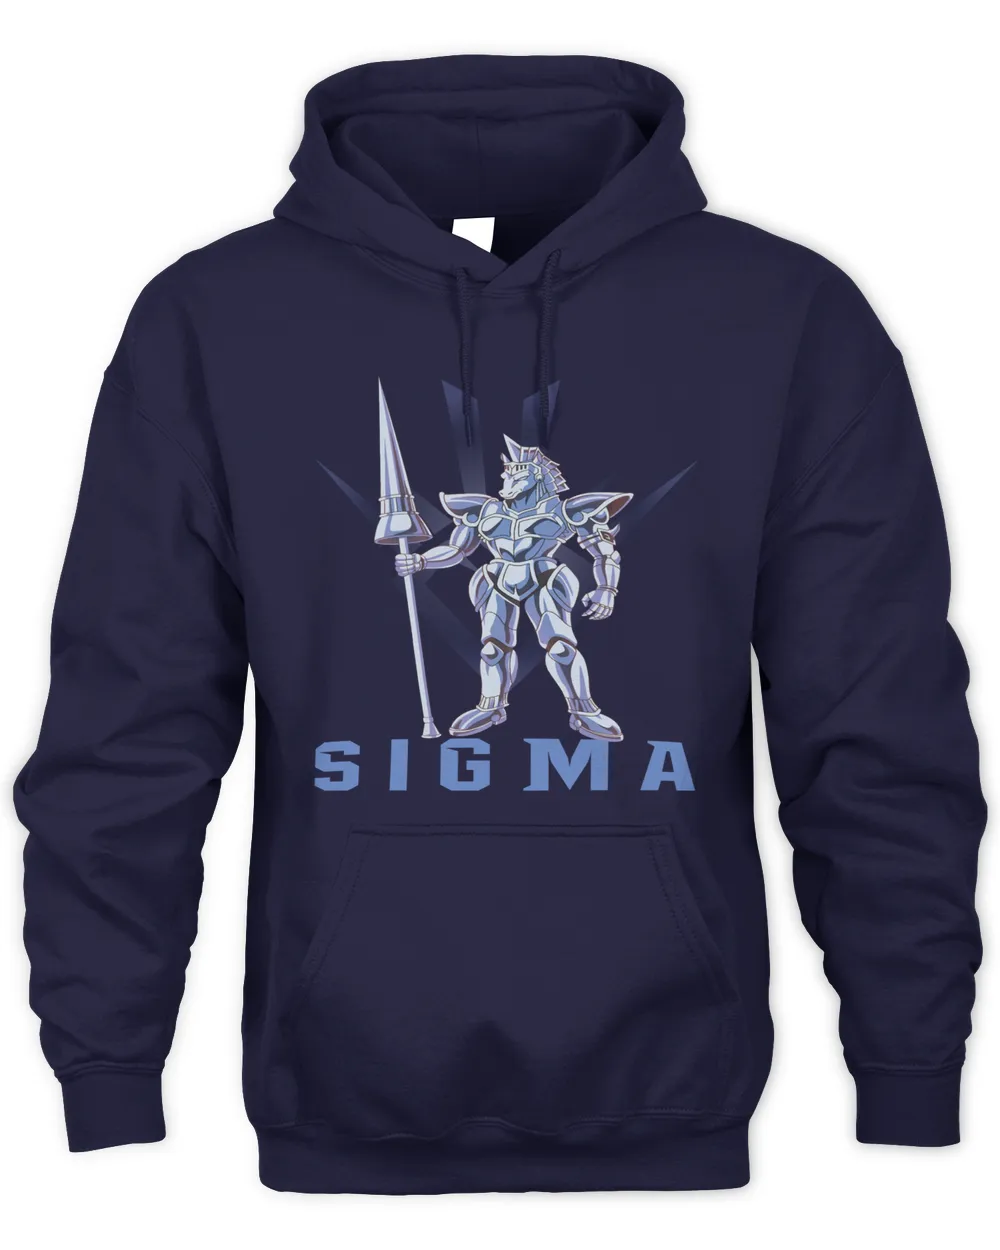 Sigma Dragon Quest